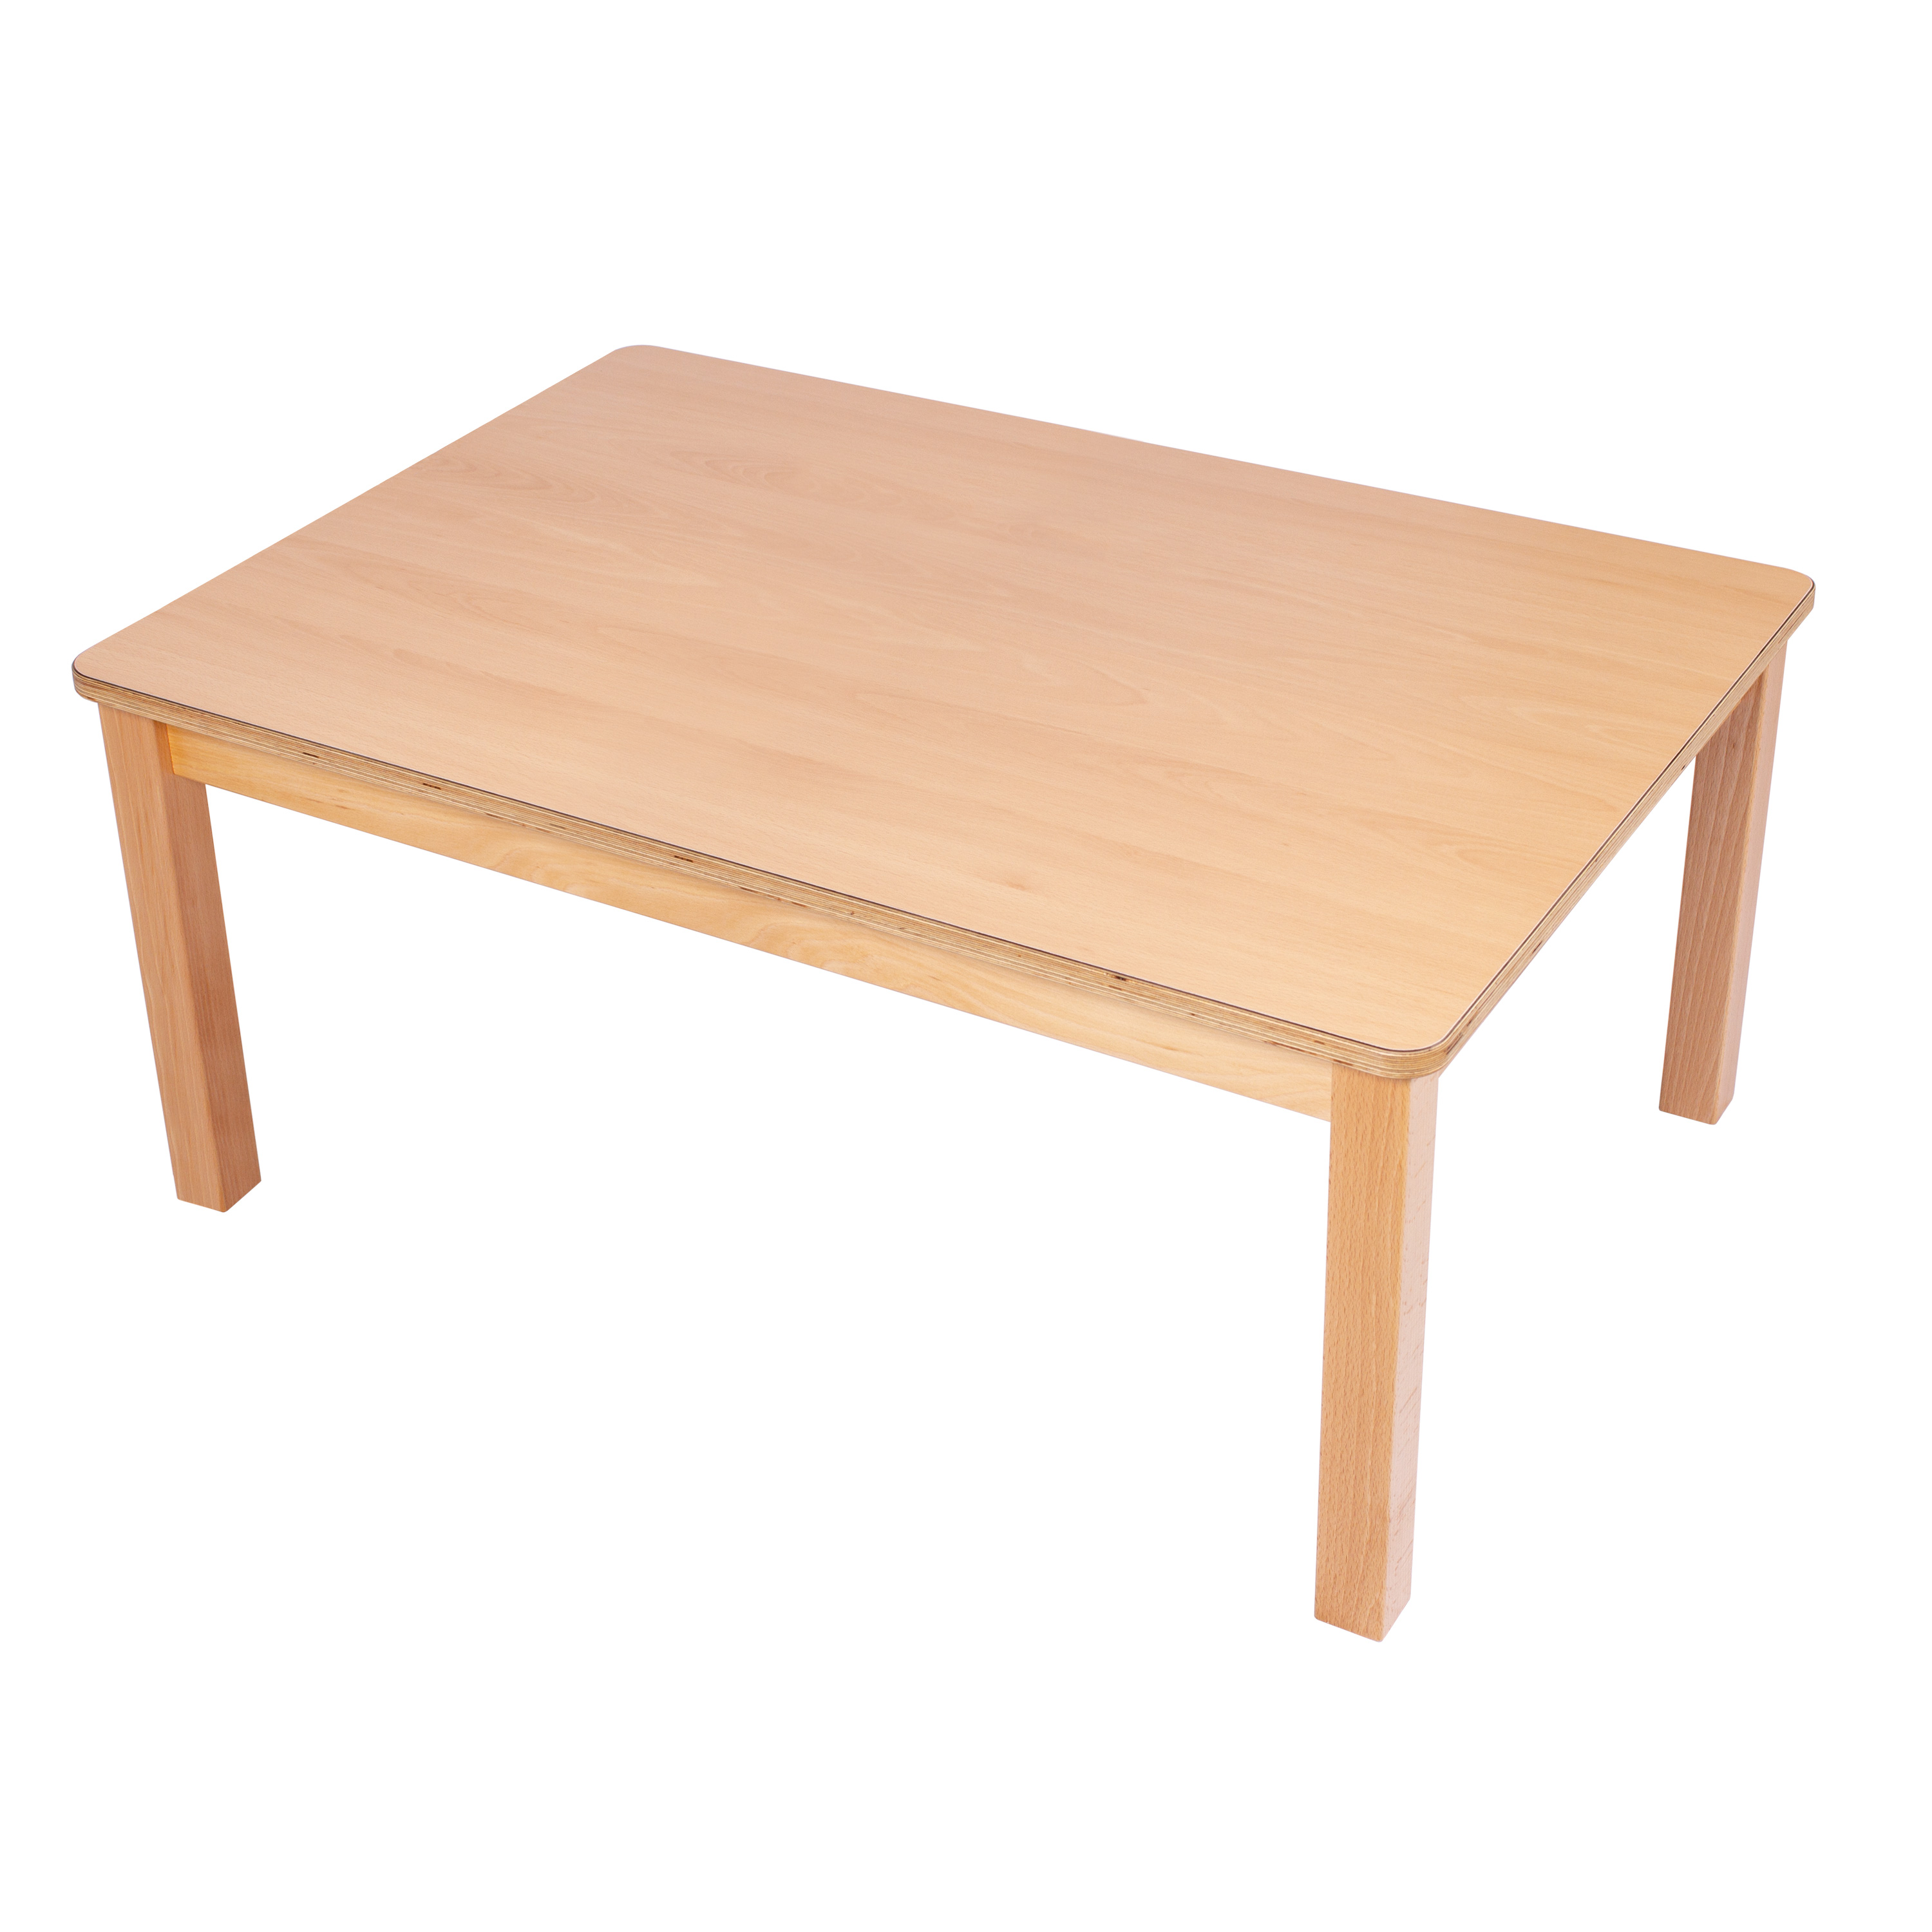 U3-Rechteck-Tisch 120 x 60 cm, Ecken gerundet, H: 46 cm